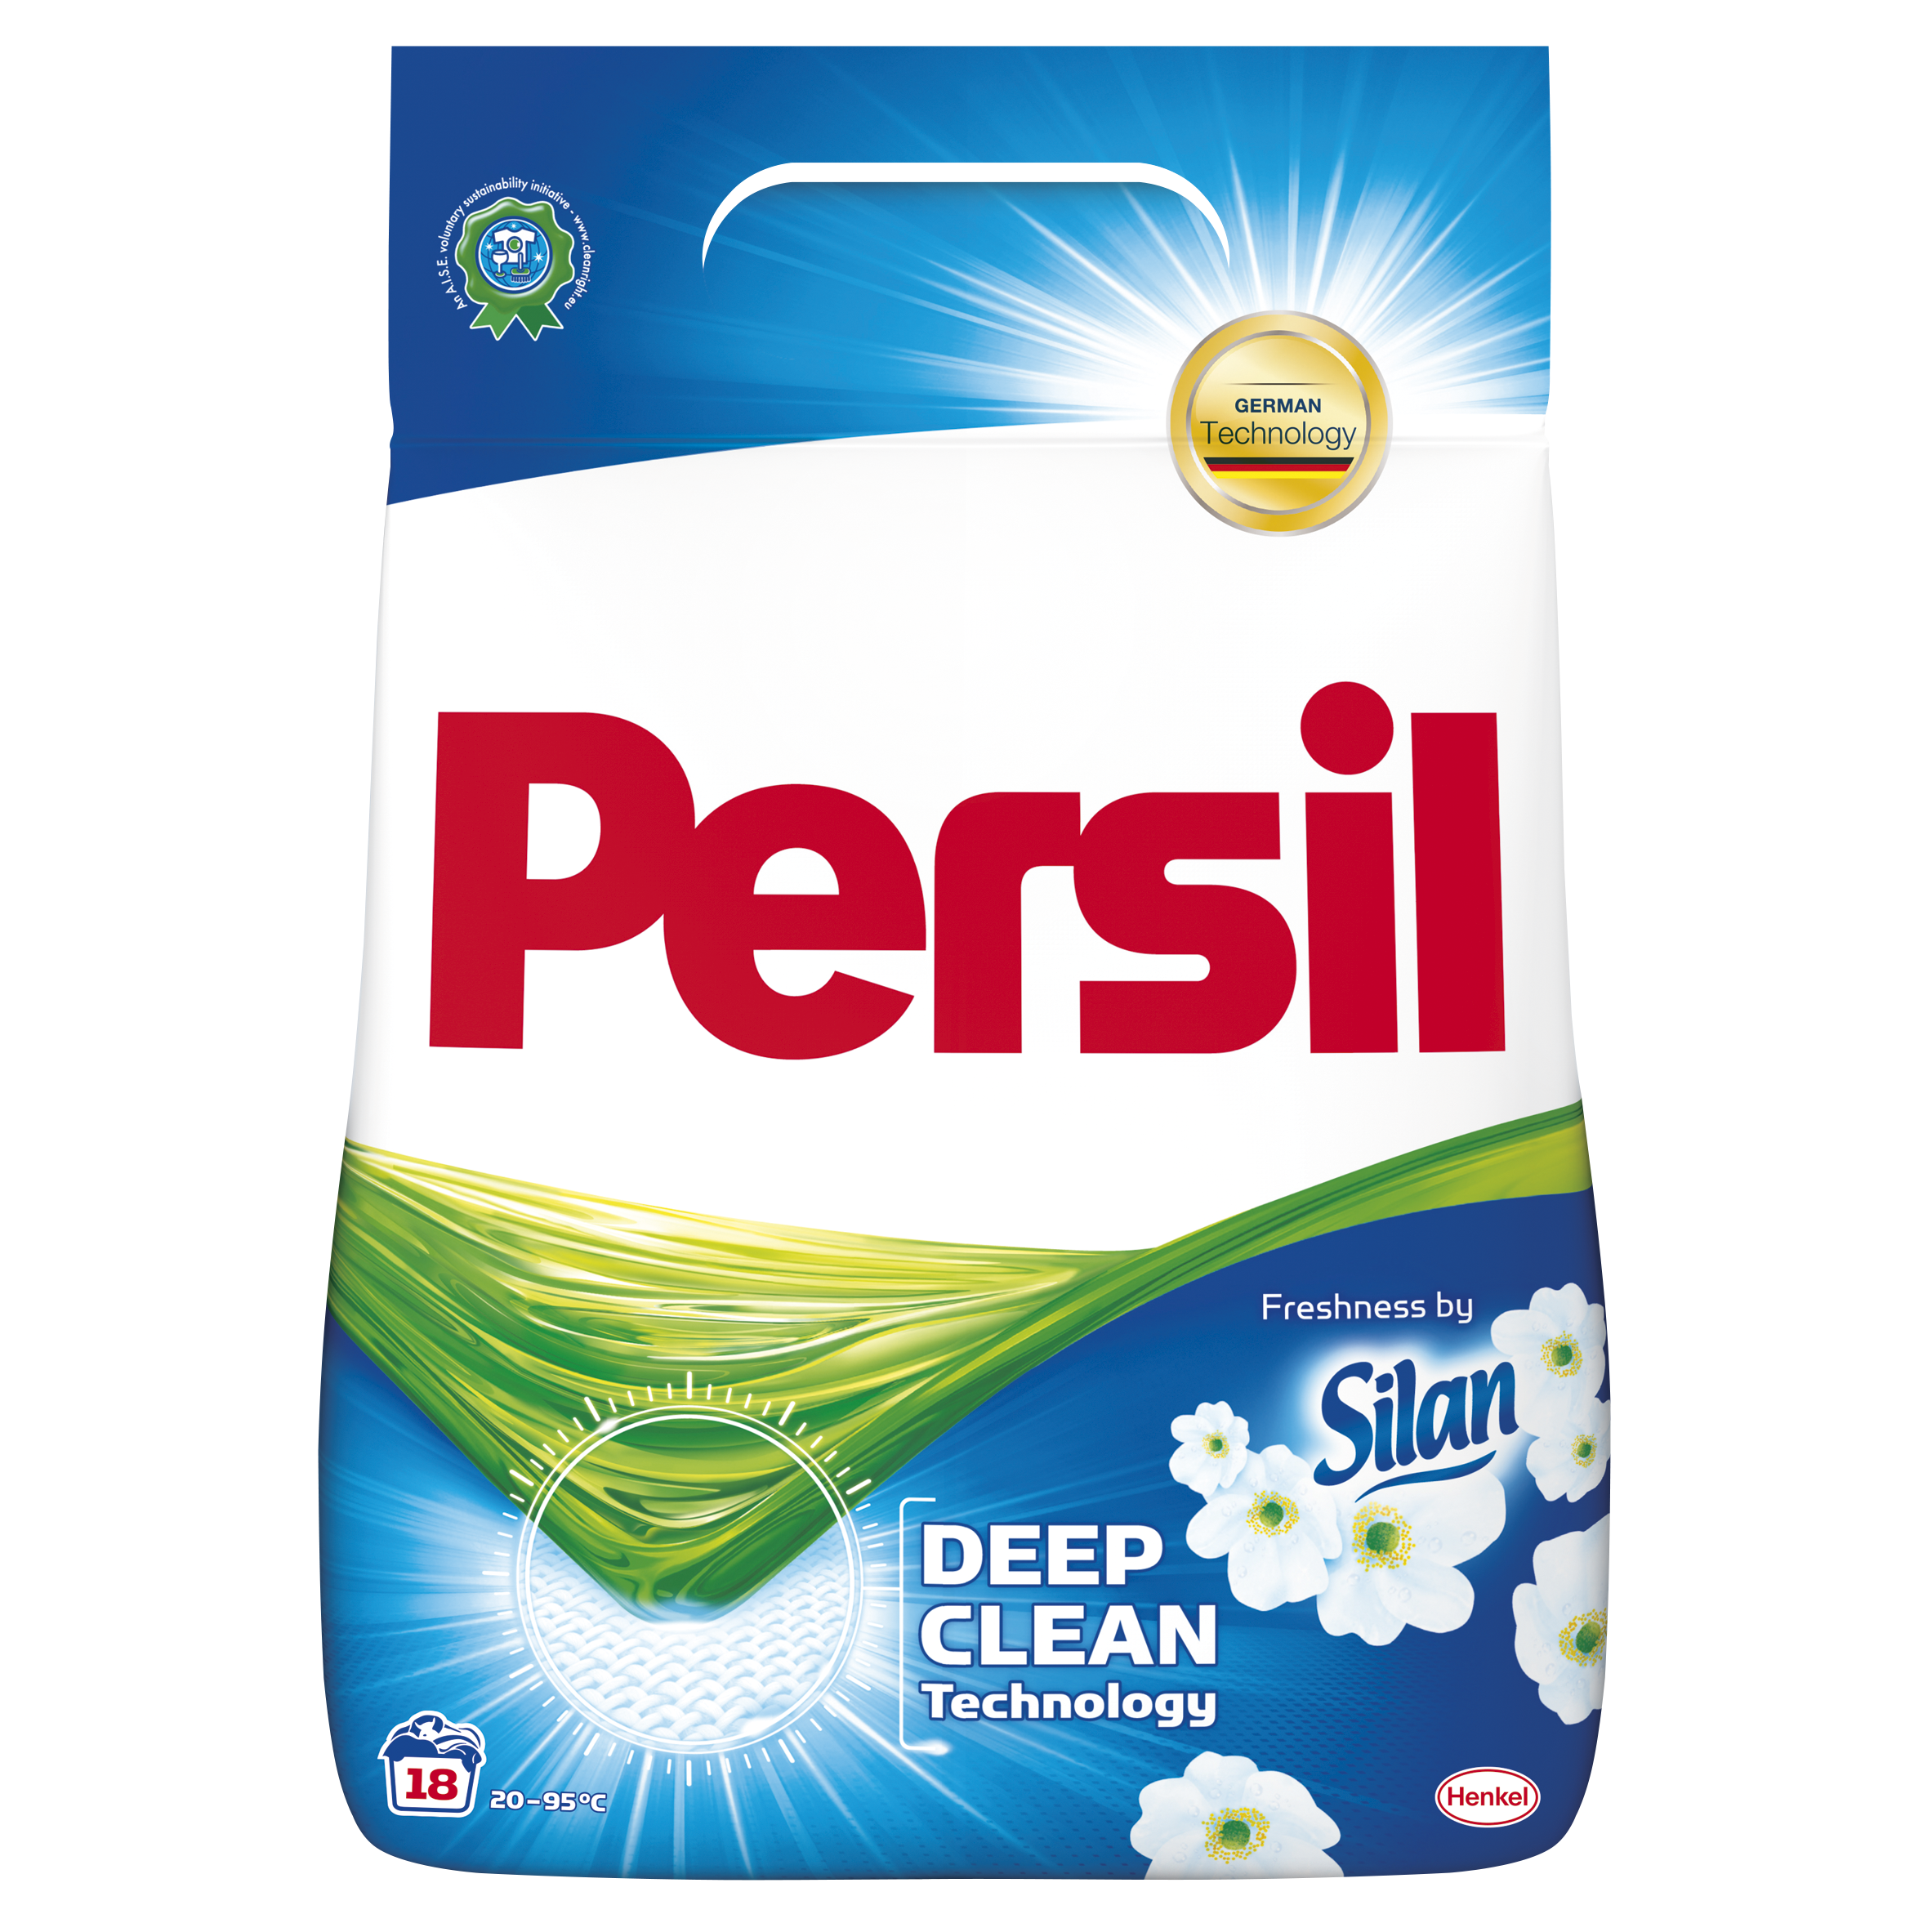 Persil Freshness by Silan prací prášek, 18 praní 1,17 kg